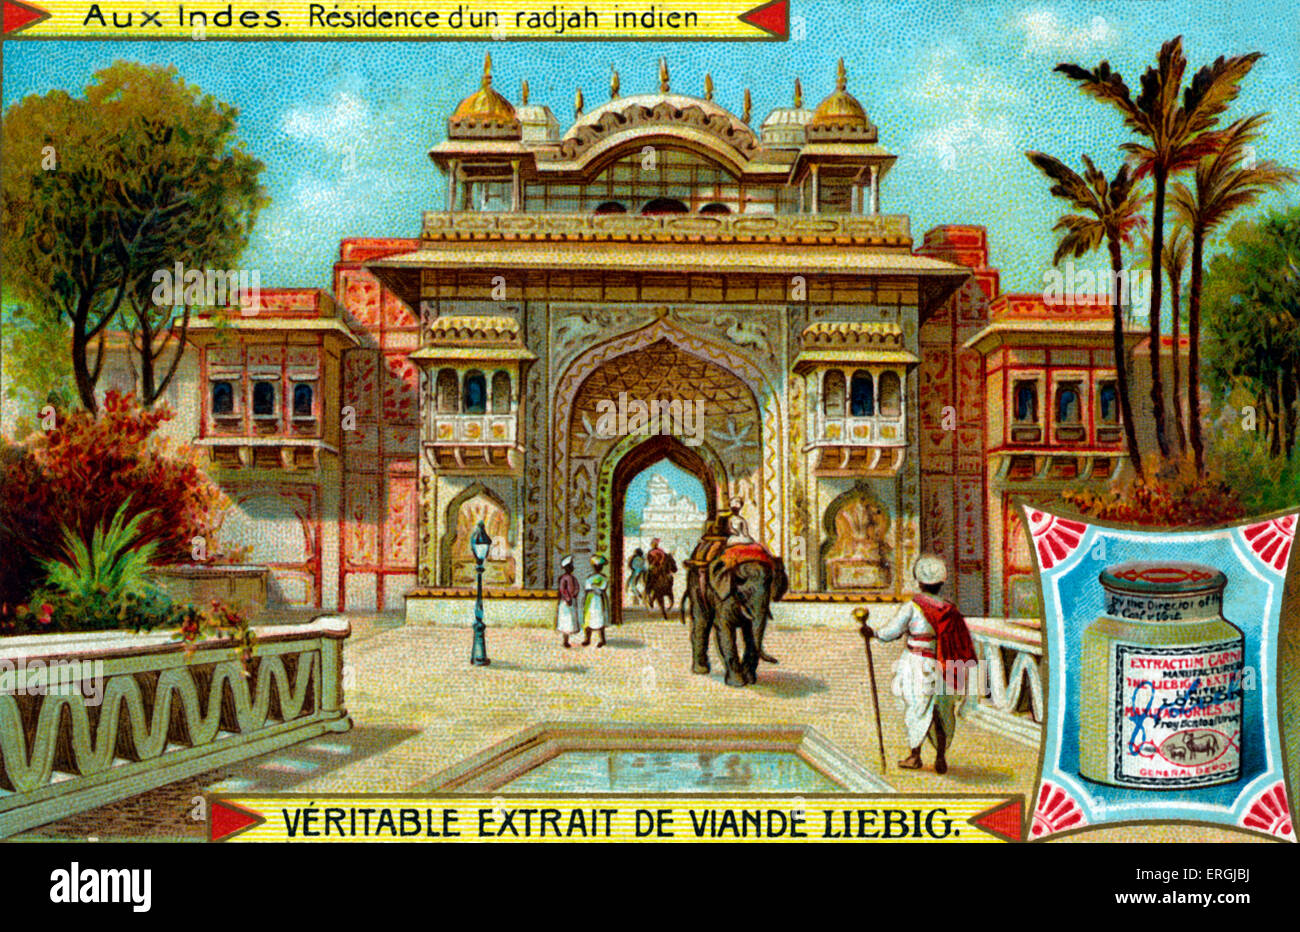 Brihadeeswarar-Tempel in Thanjavur, Indien.  Anfang des 20. Jahrhunderts Illustration von Liebig Sammelkartenspiel (französischer Titel der Serie: Stockfoto